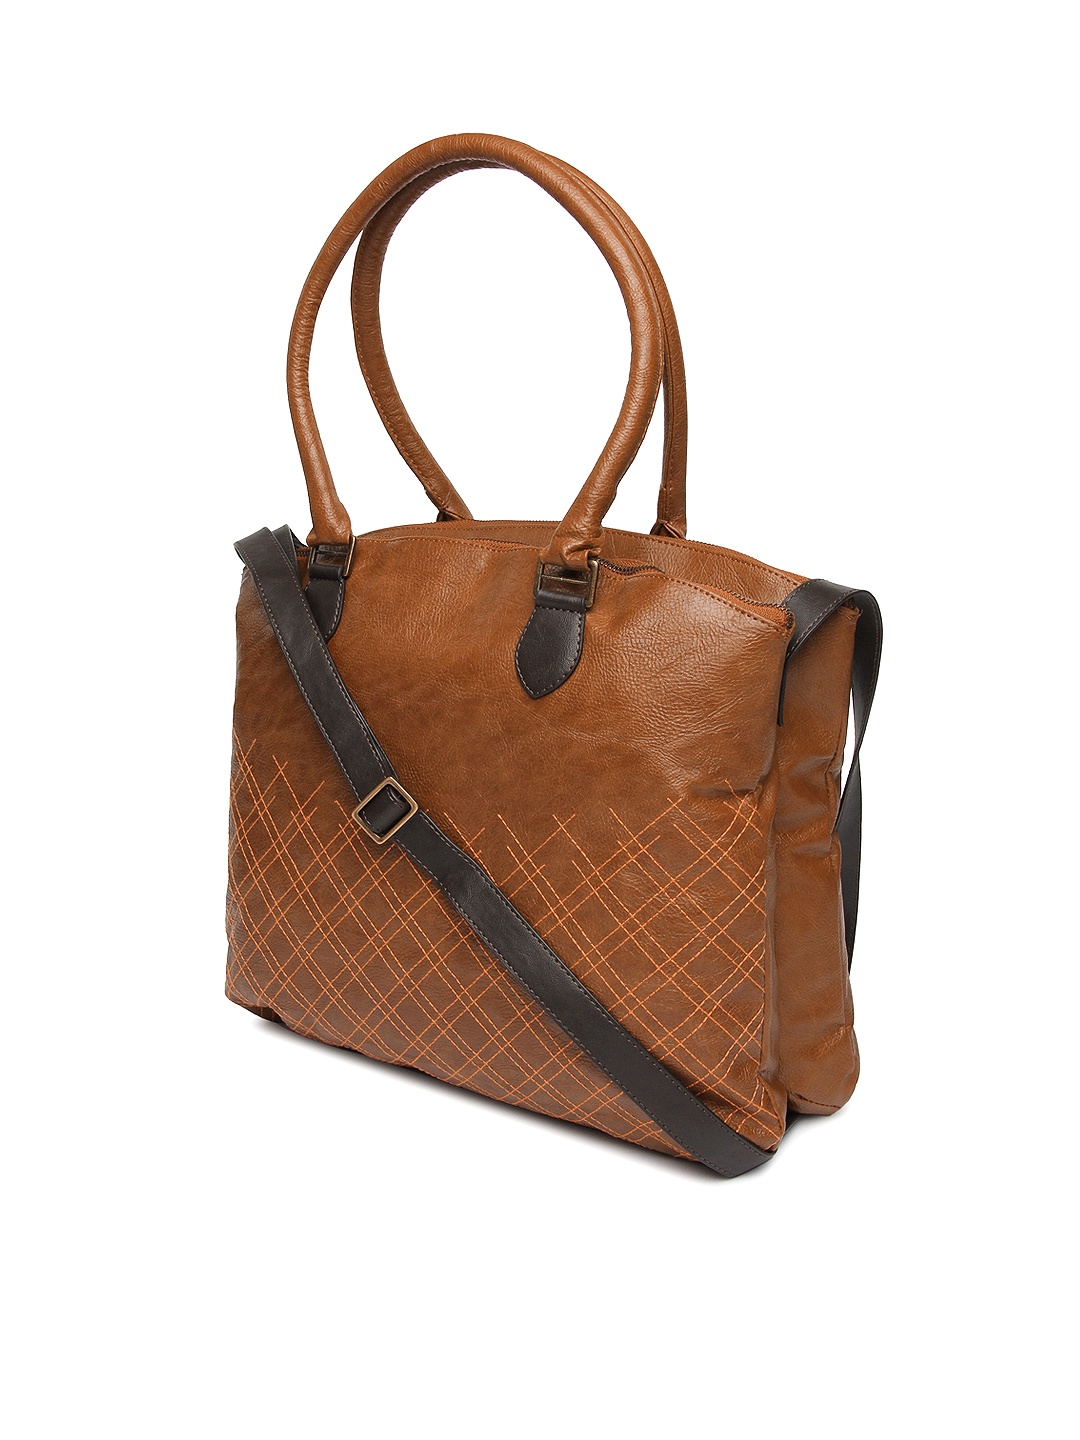 Myntra Baggit Brown Handbag 496675 | Buy Myntra Baggit Handbags at best price online. All myntra ...